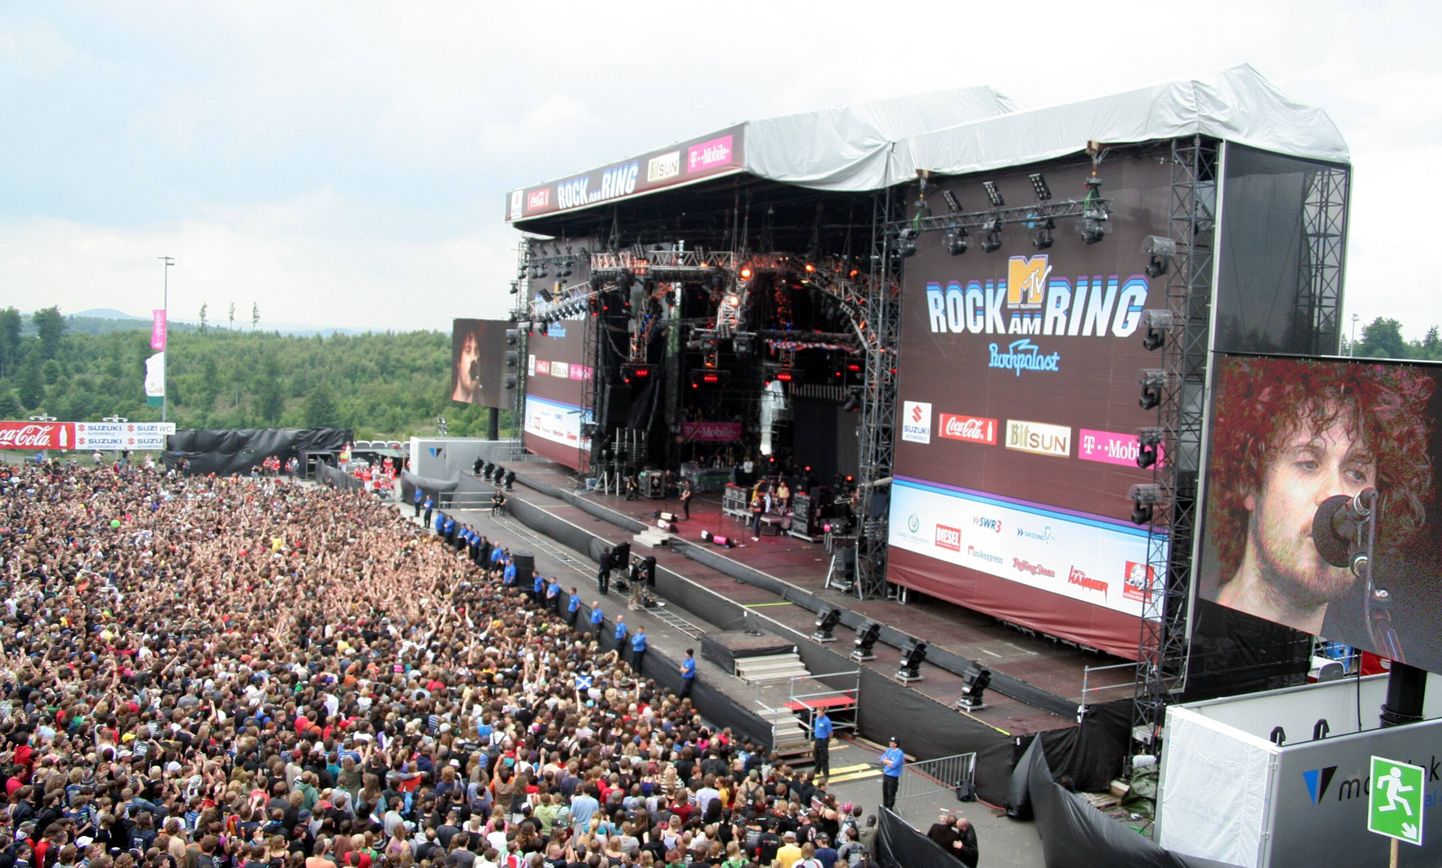 Saksa muusikafestival Rock am Ring. Foto on illustratiivne.